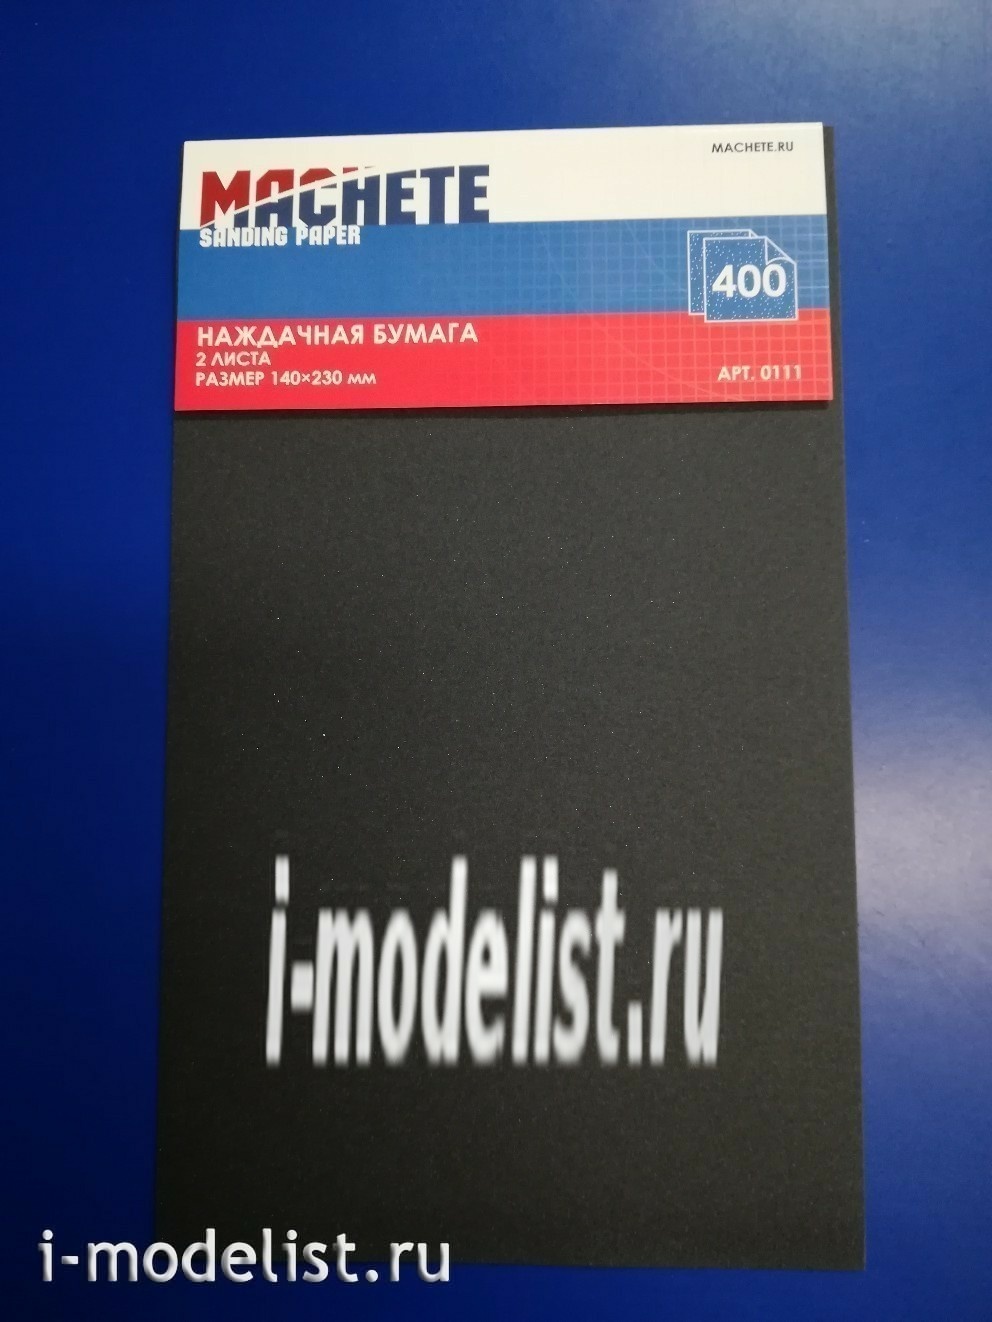 0111 MACHETE sandpaper 400 (2 sheets)